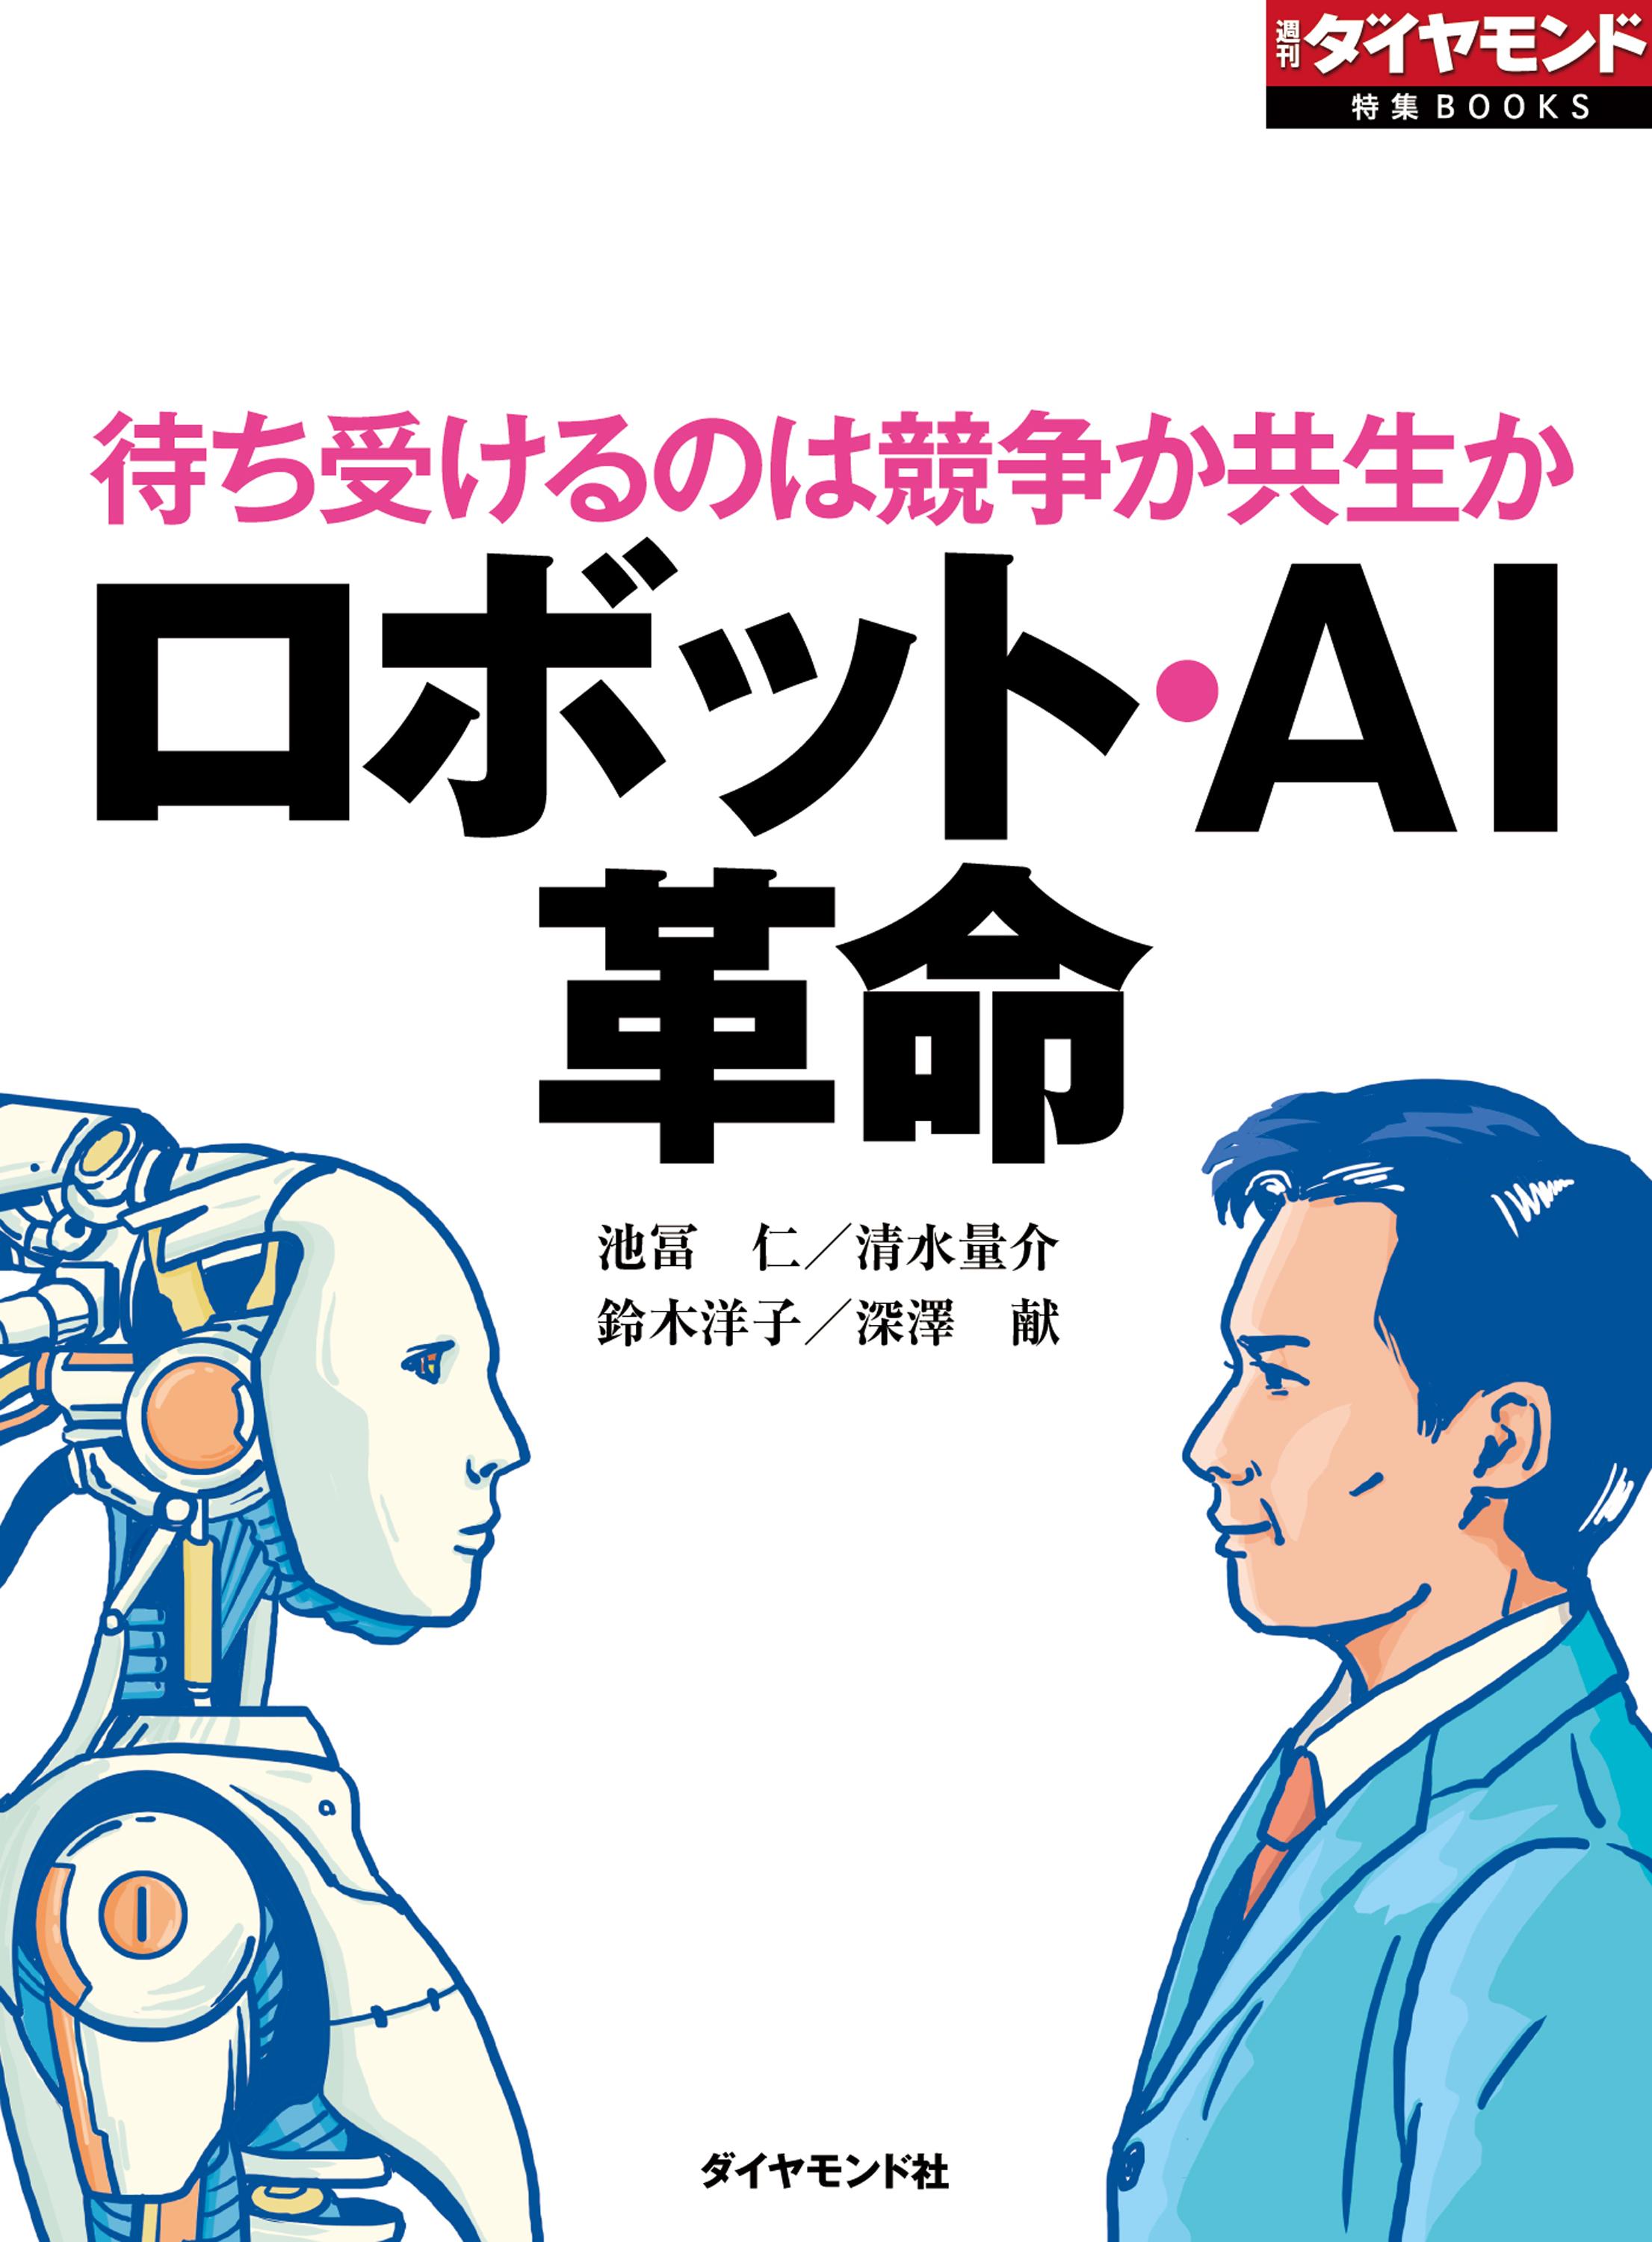 ロボット・AI革命